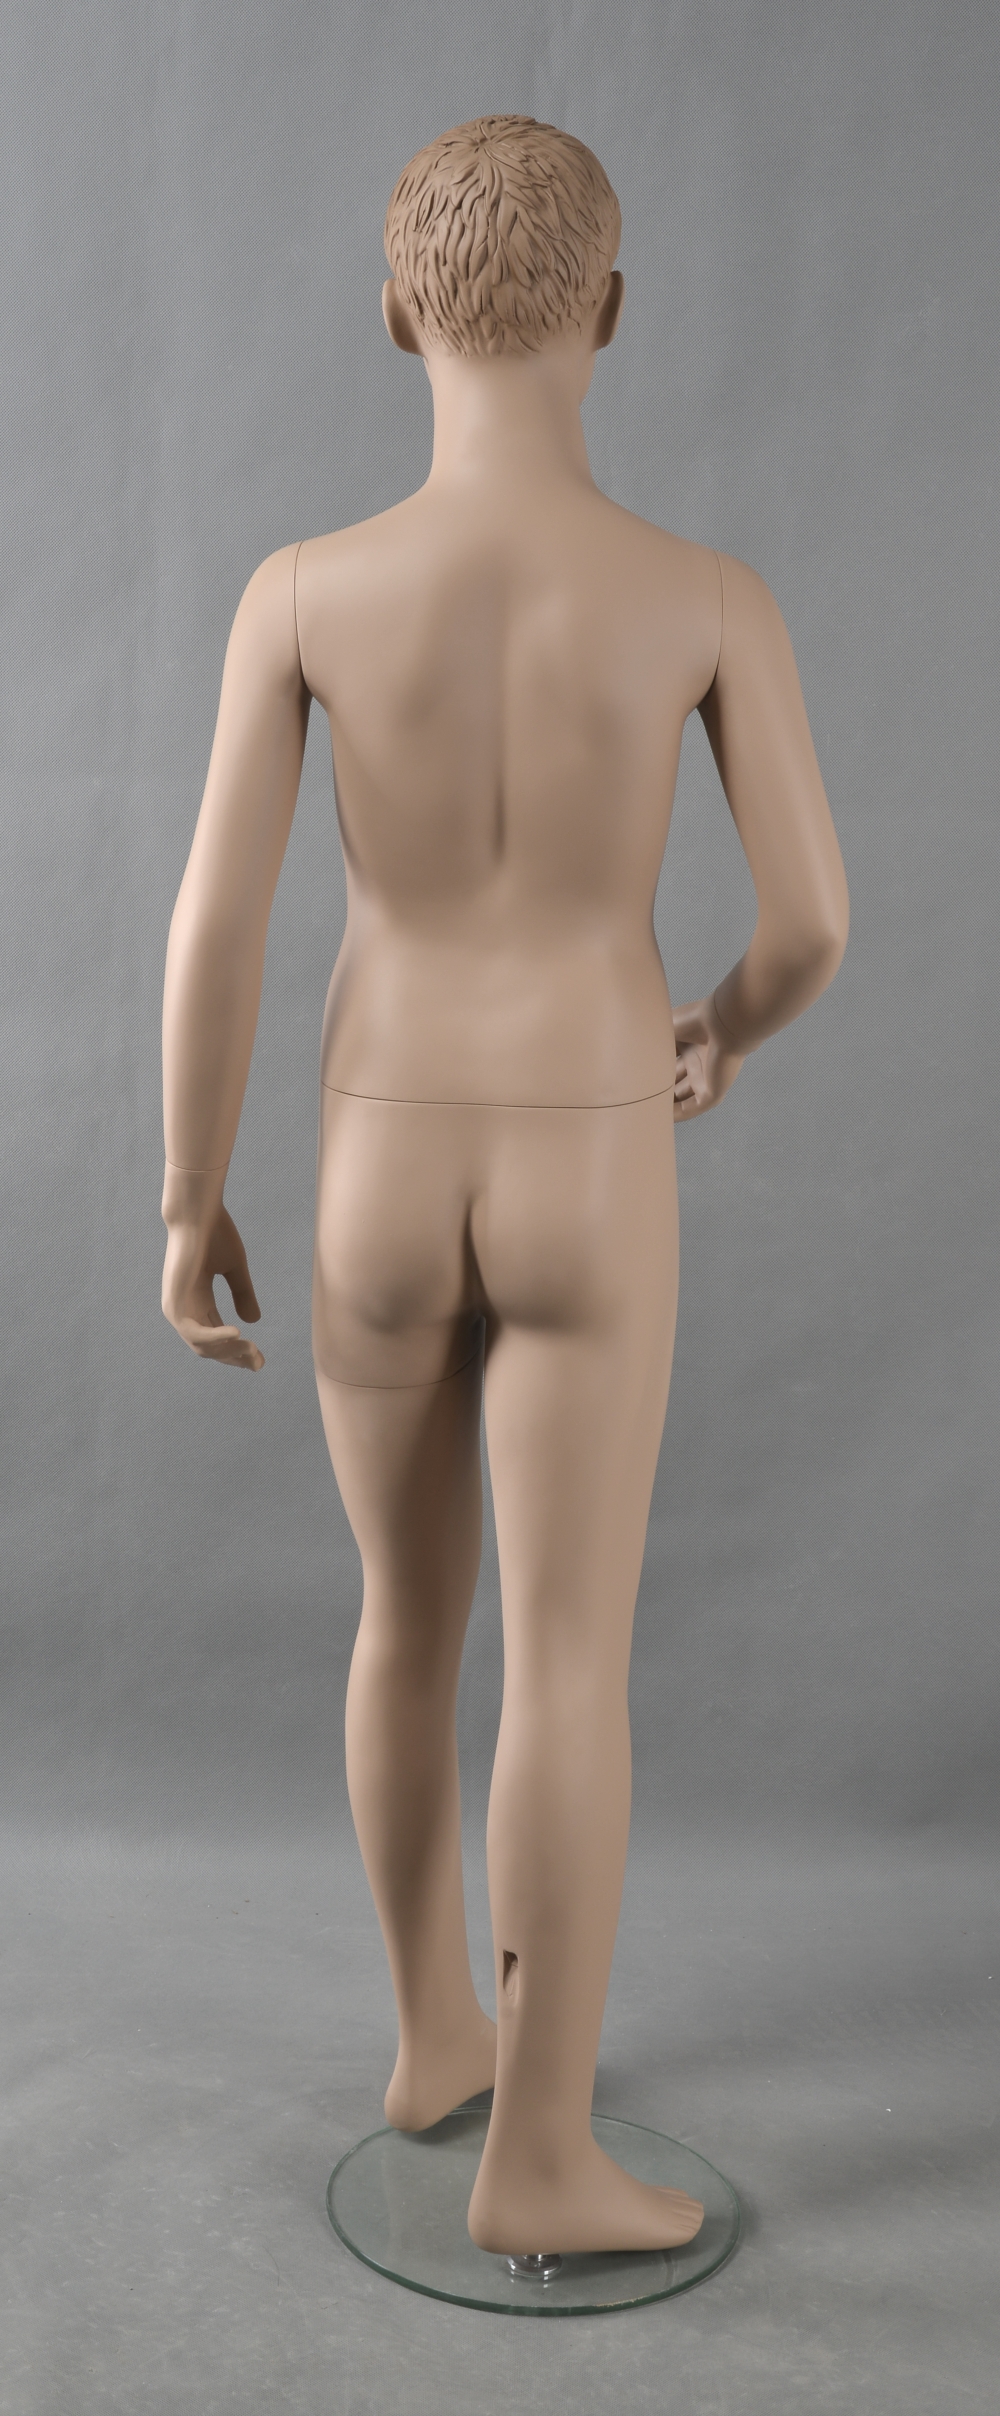 Schaufensterfigur "Bodysculpt" EVO2 Junge 10 Jahre hautfarbe